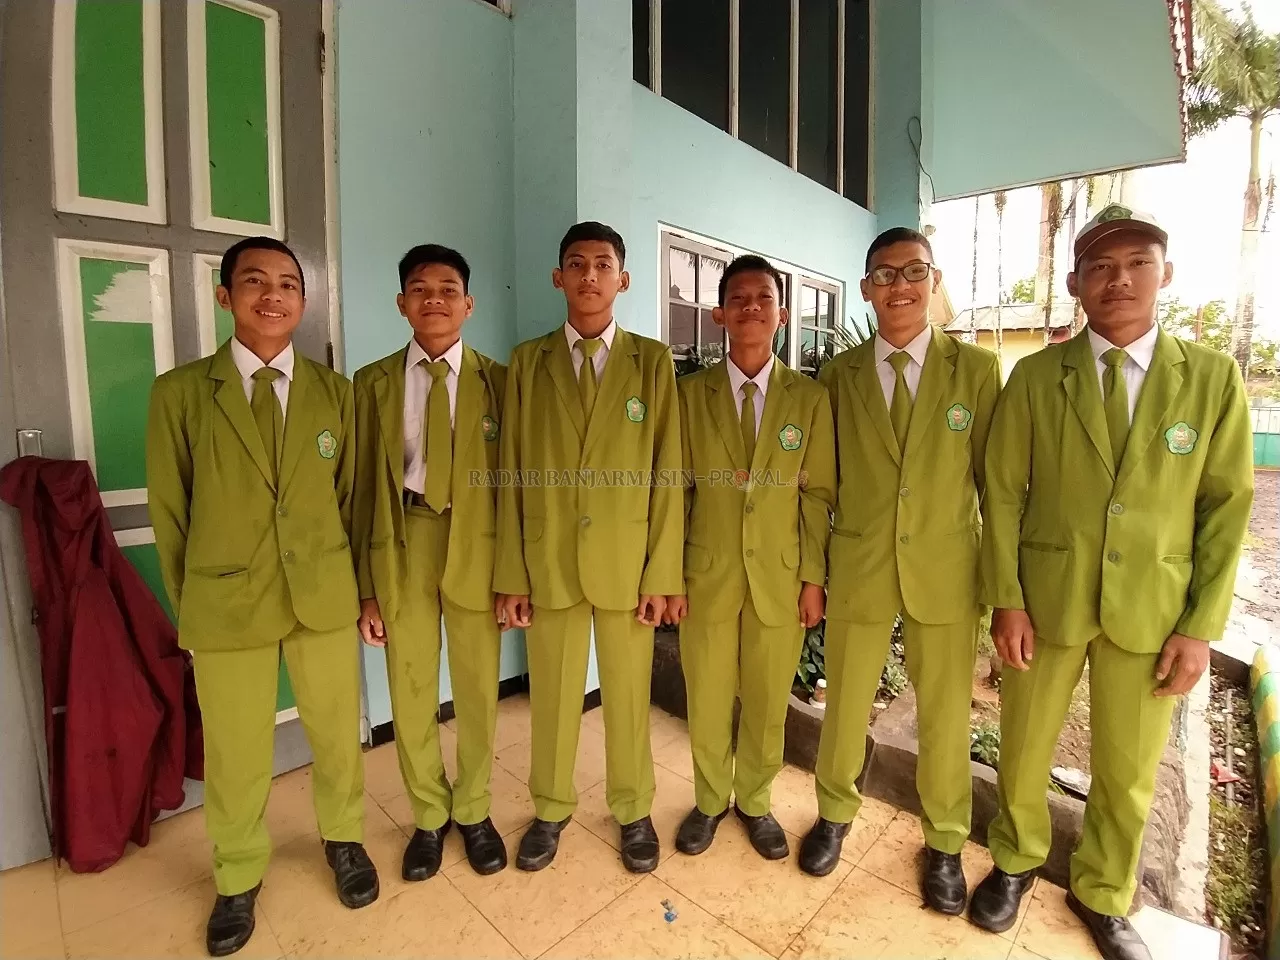 MAGANG: Sebanyak 7 orang siswa untuk magang Di Kelompok Tani Guntung Payung, Banjarbaru.  Sudah separuh lebih siswa dimagangkan di berbagai kelompok tani dan perusahaan.